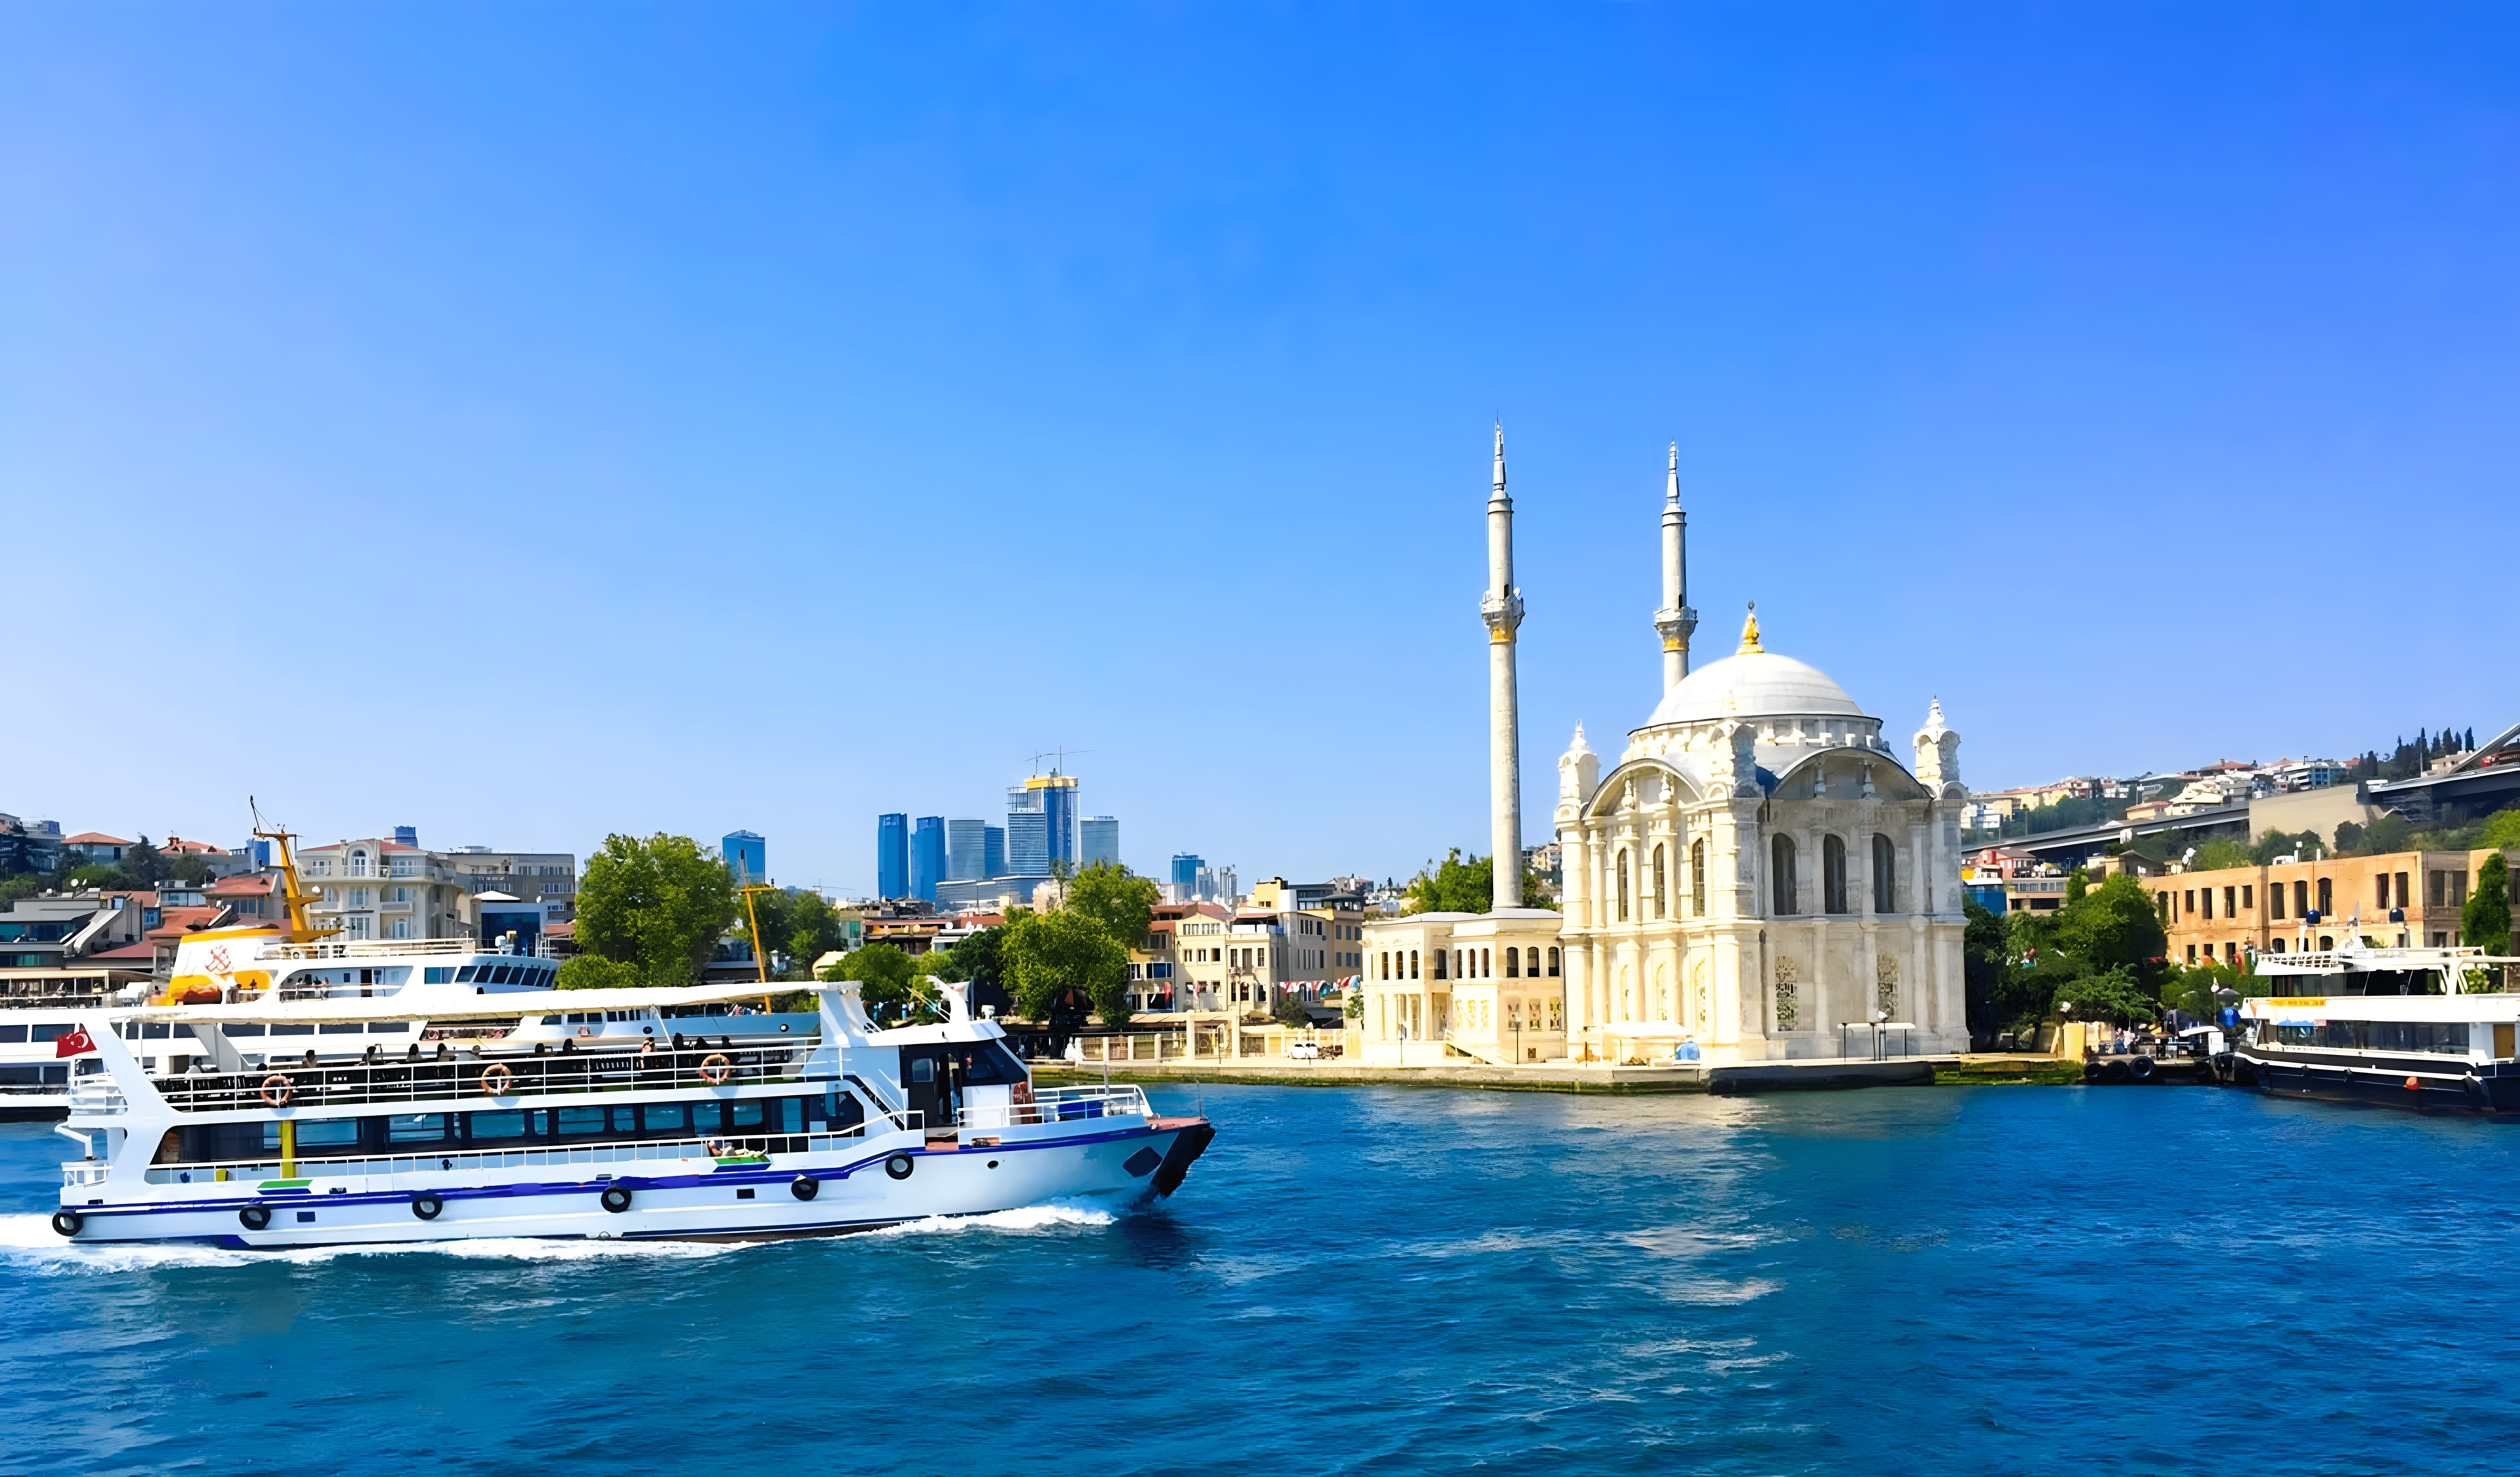 Morning Cruise along the Bosphorus